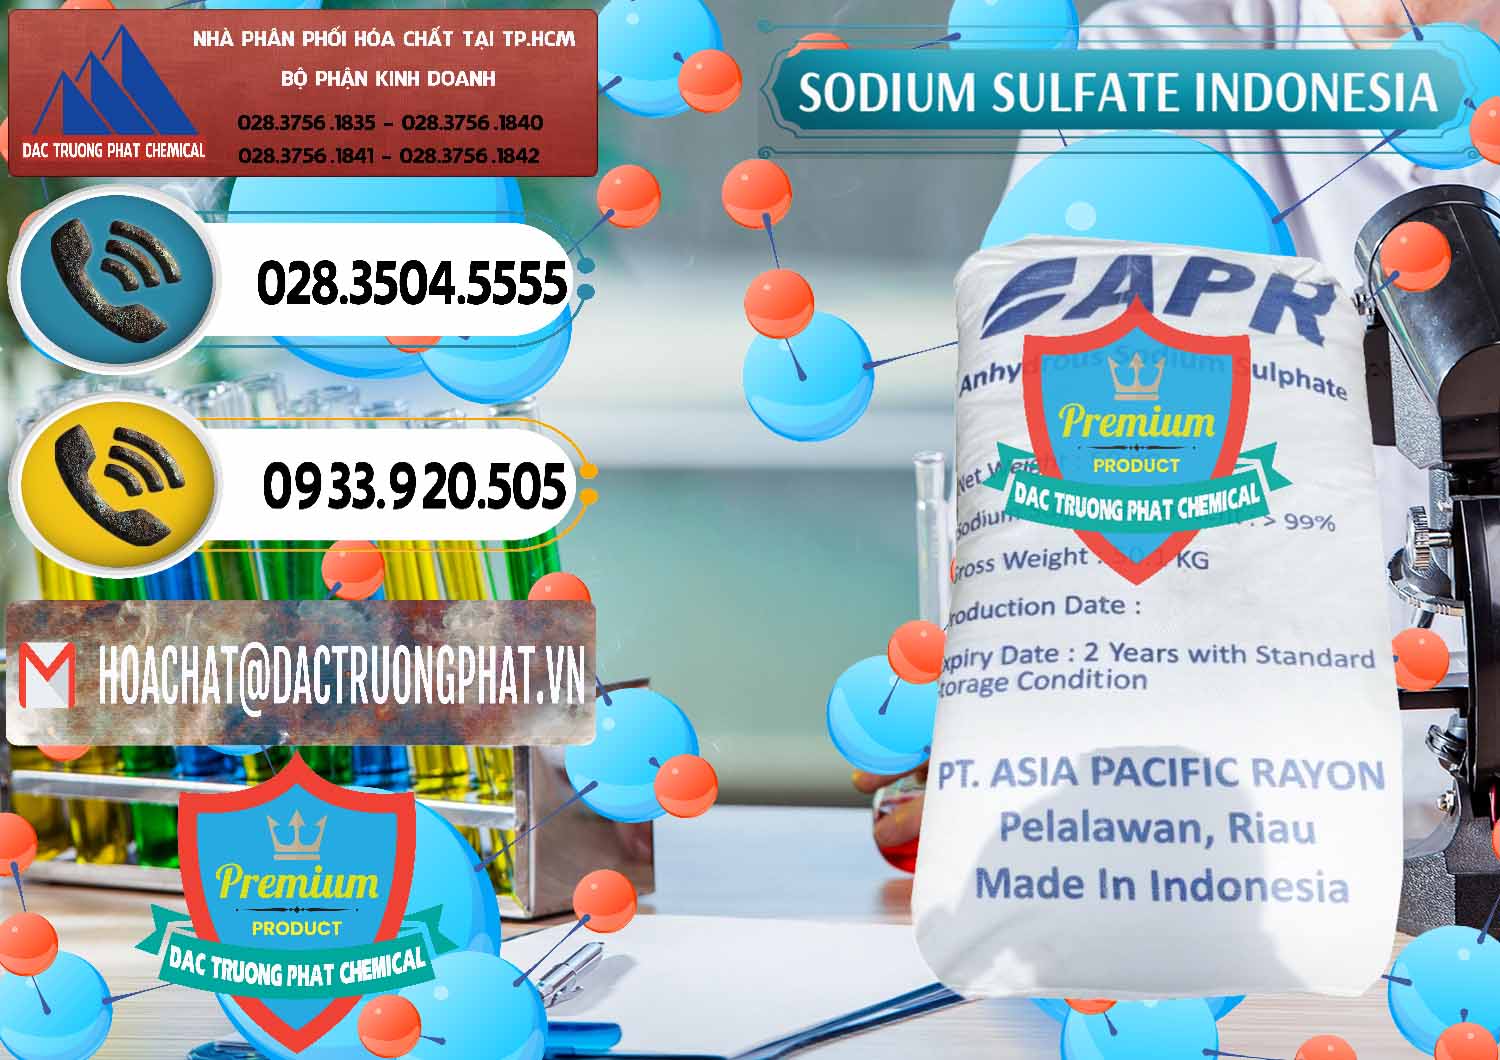 Đơn vị bán _ phân phối Sodium Sulphate - Muối Sunfat Na2SO4 APR Indonesia - 0460 - Cty chuyên cung cấp _ kinh doanh hóa chất tại TP.HCM - hoachatdetnhuom.vn